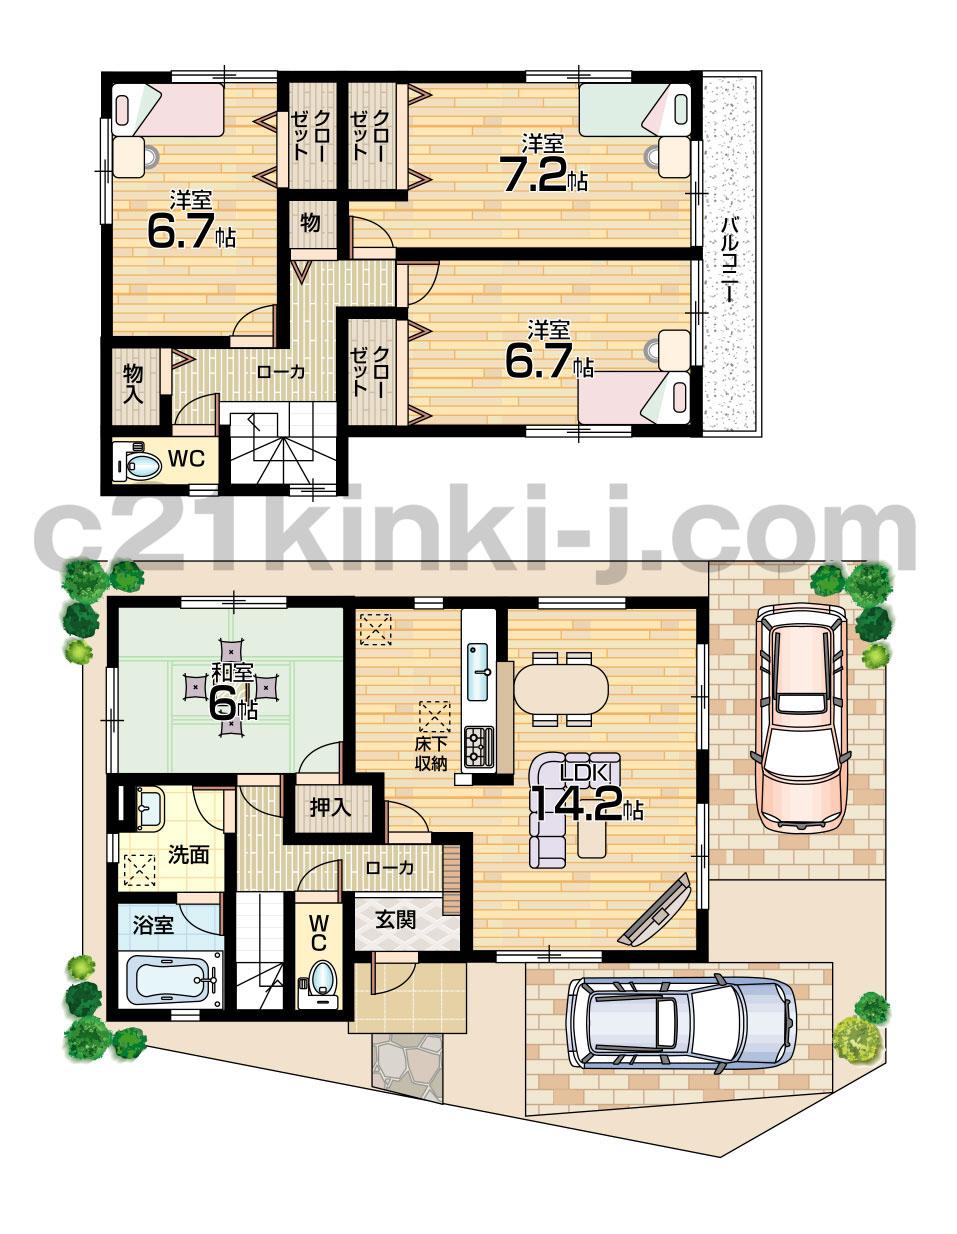 Floor plan. 29,800,000 yen, 4LDK, Land area 99.67 sq m , Building area 98.41 sq m floor plan